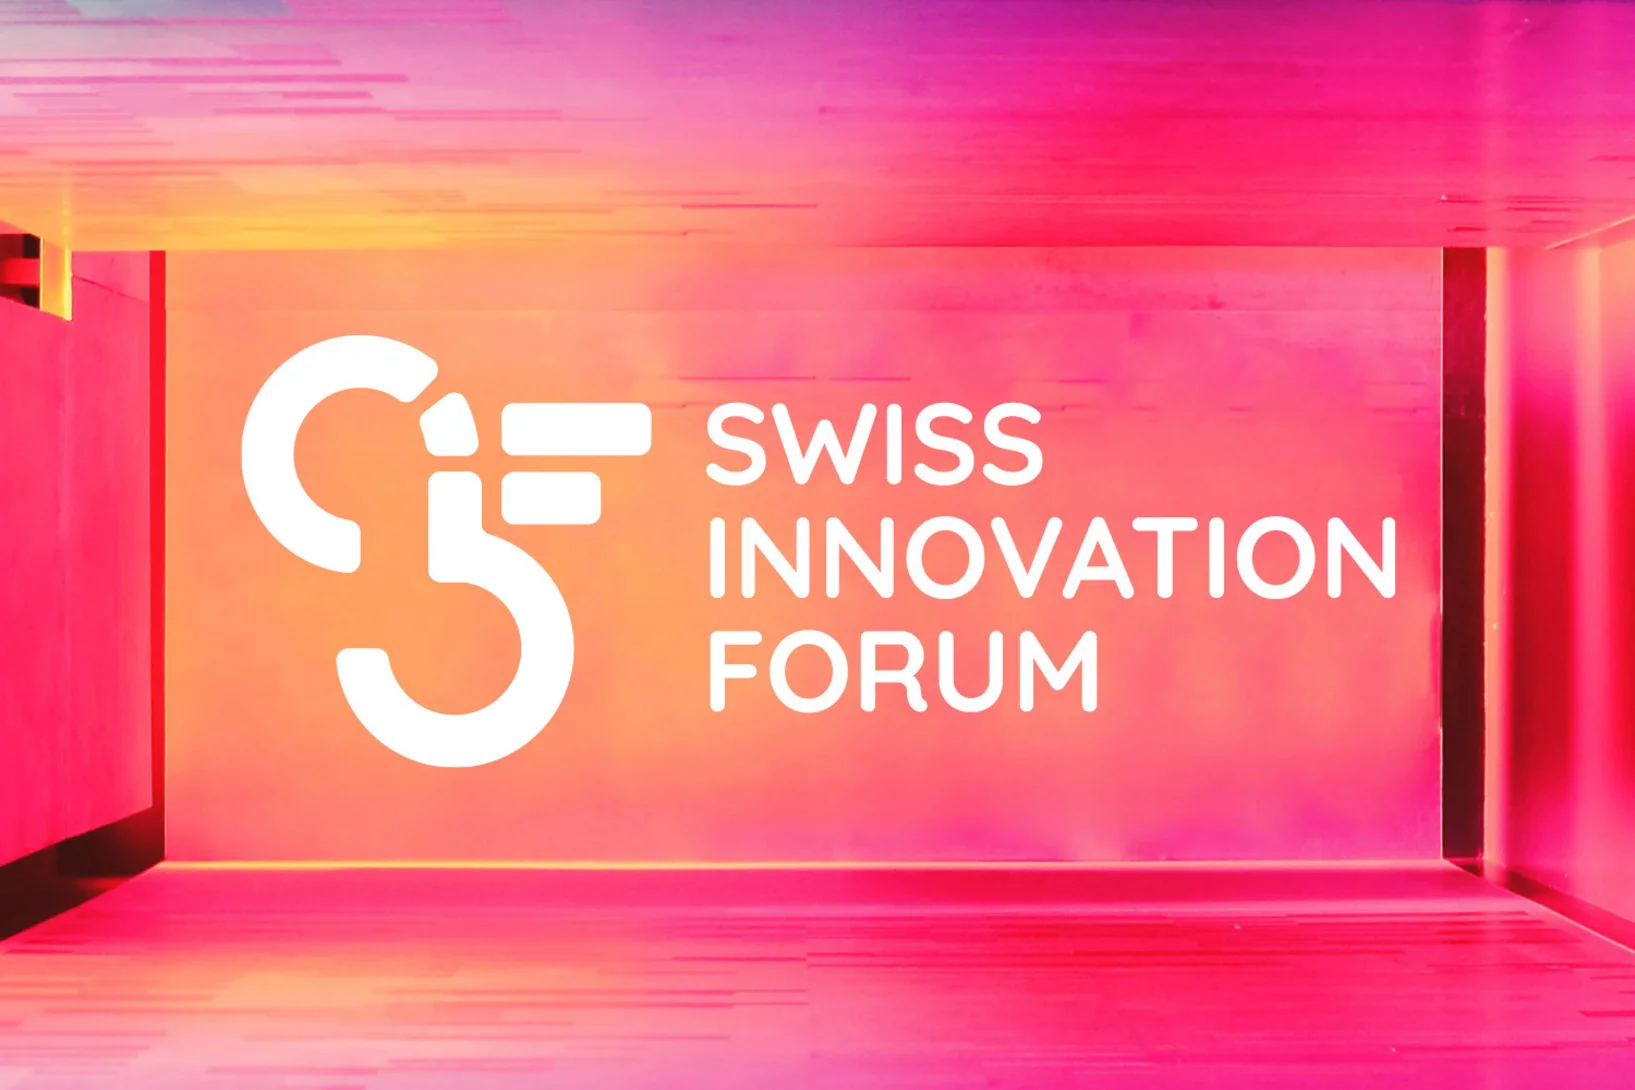 Le Swiss Innovation Forum de cette année aura lieu le 30 novembre à Bâle. (Source de l'image : Swiss Innovation Forum)